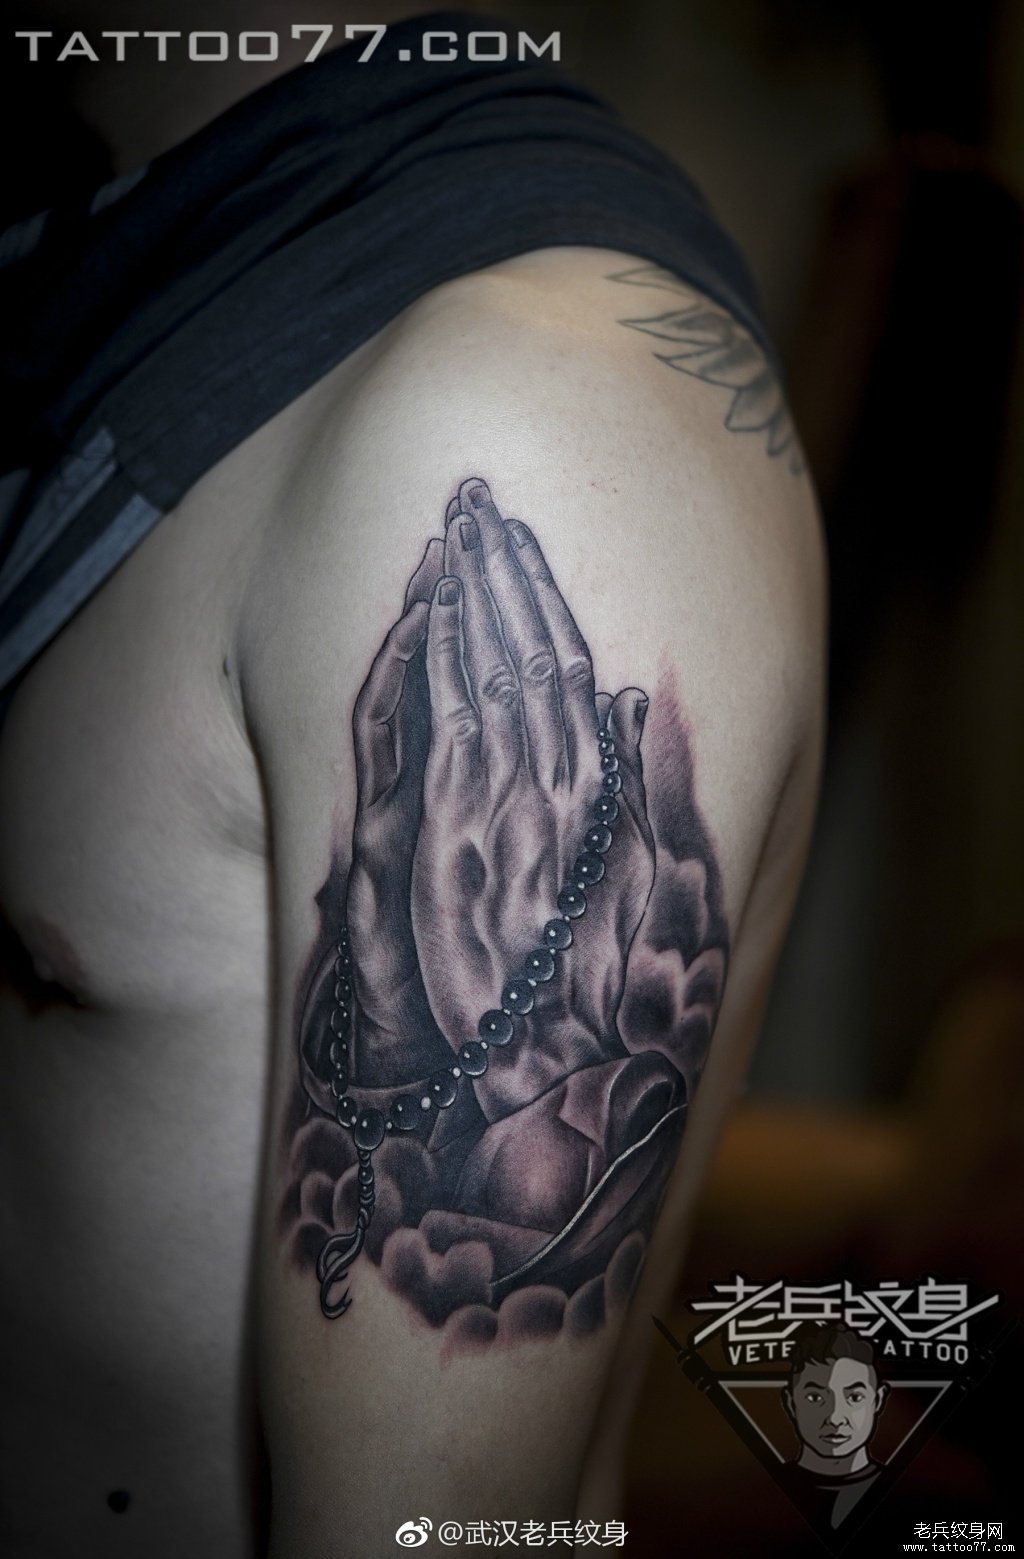 大臂祈祷之手纹身图案作品